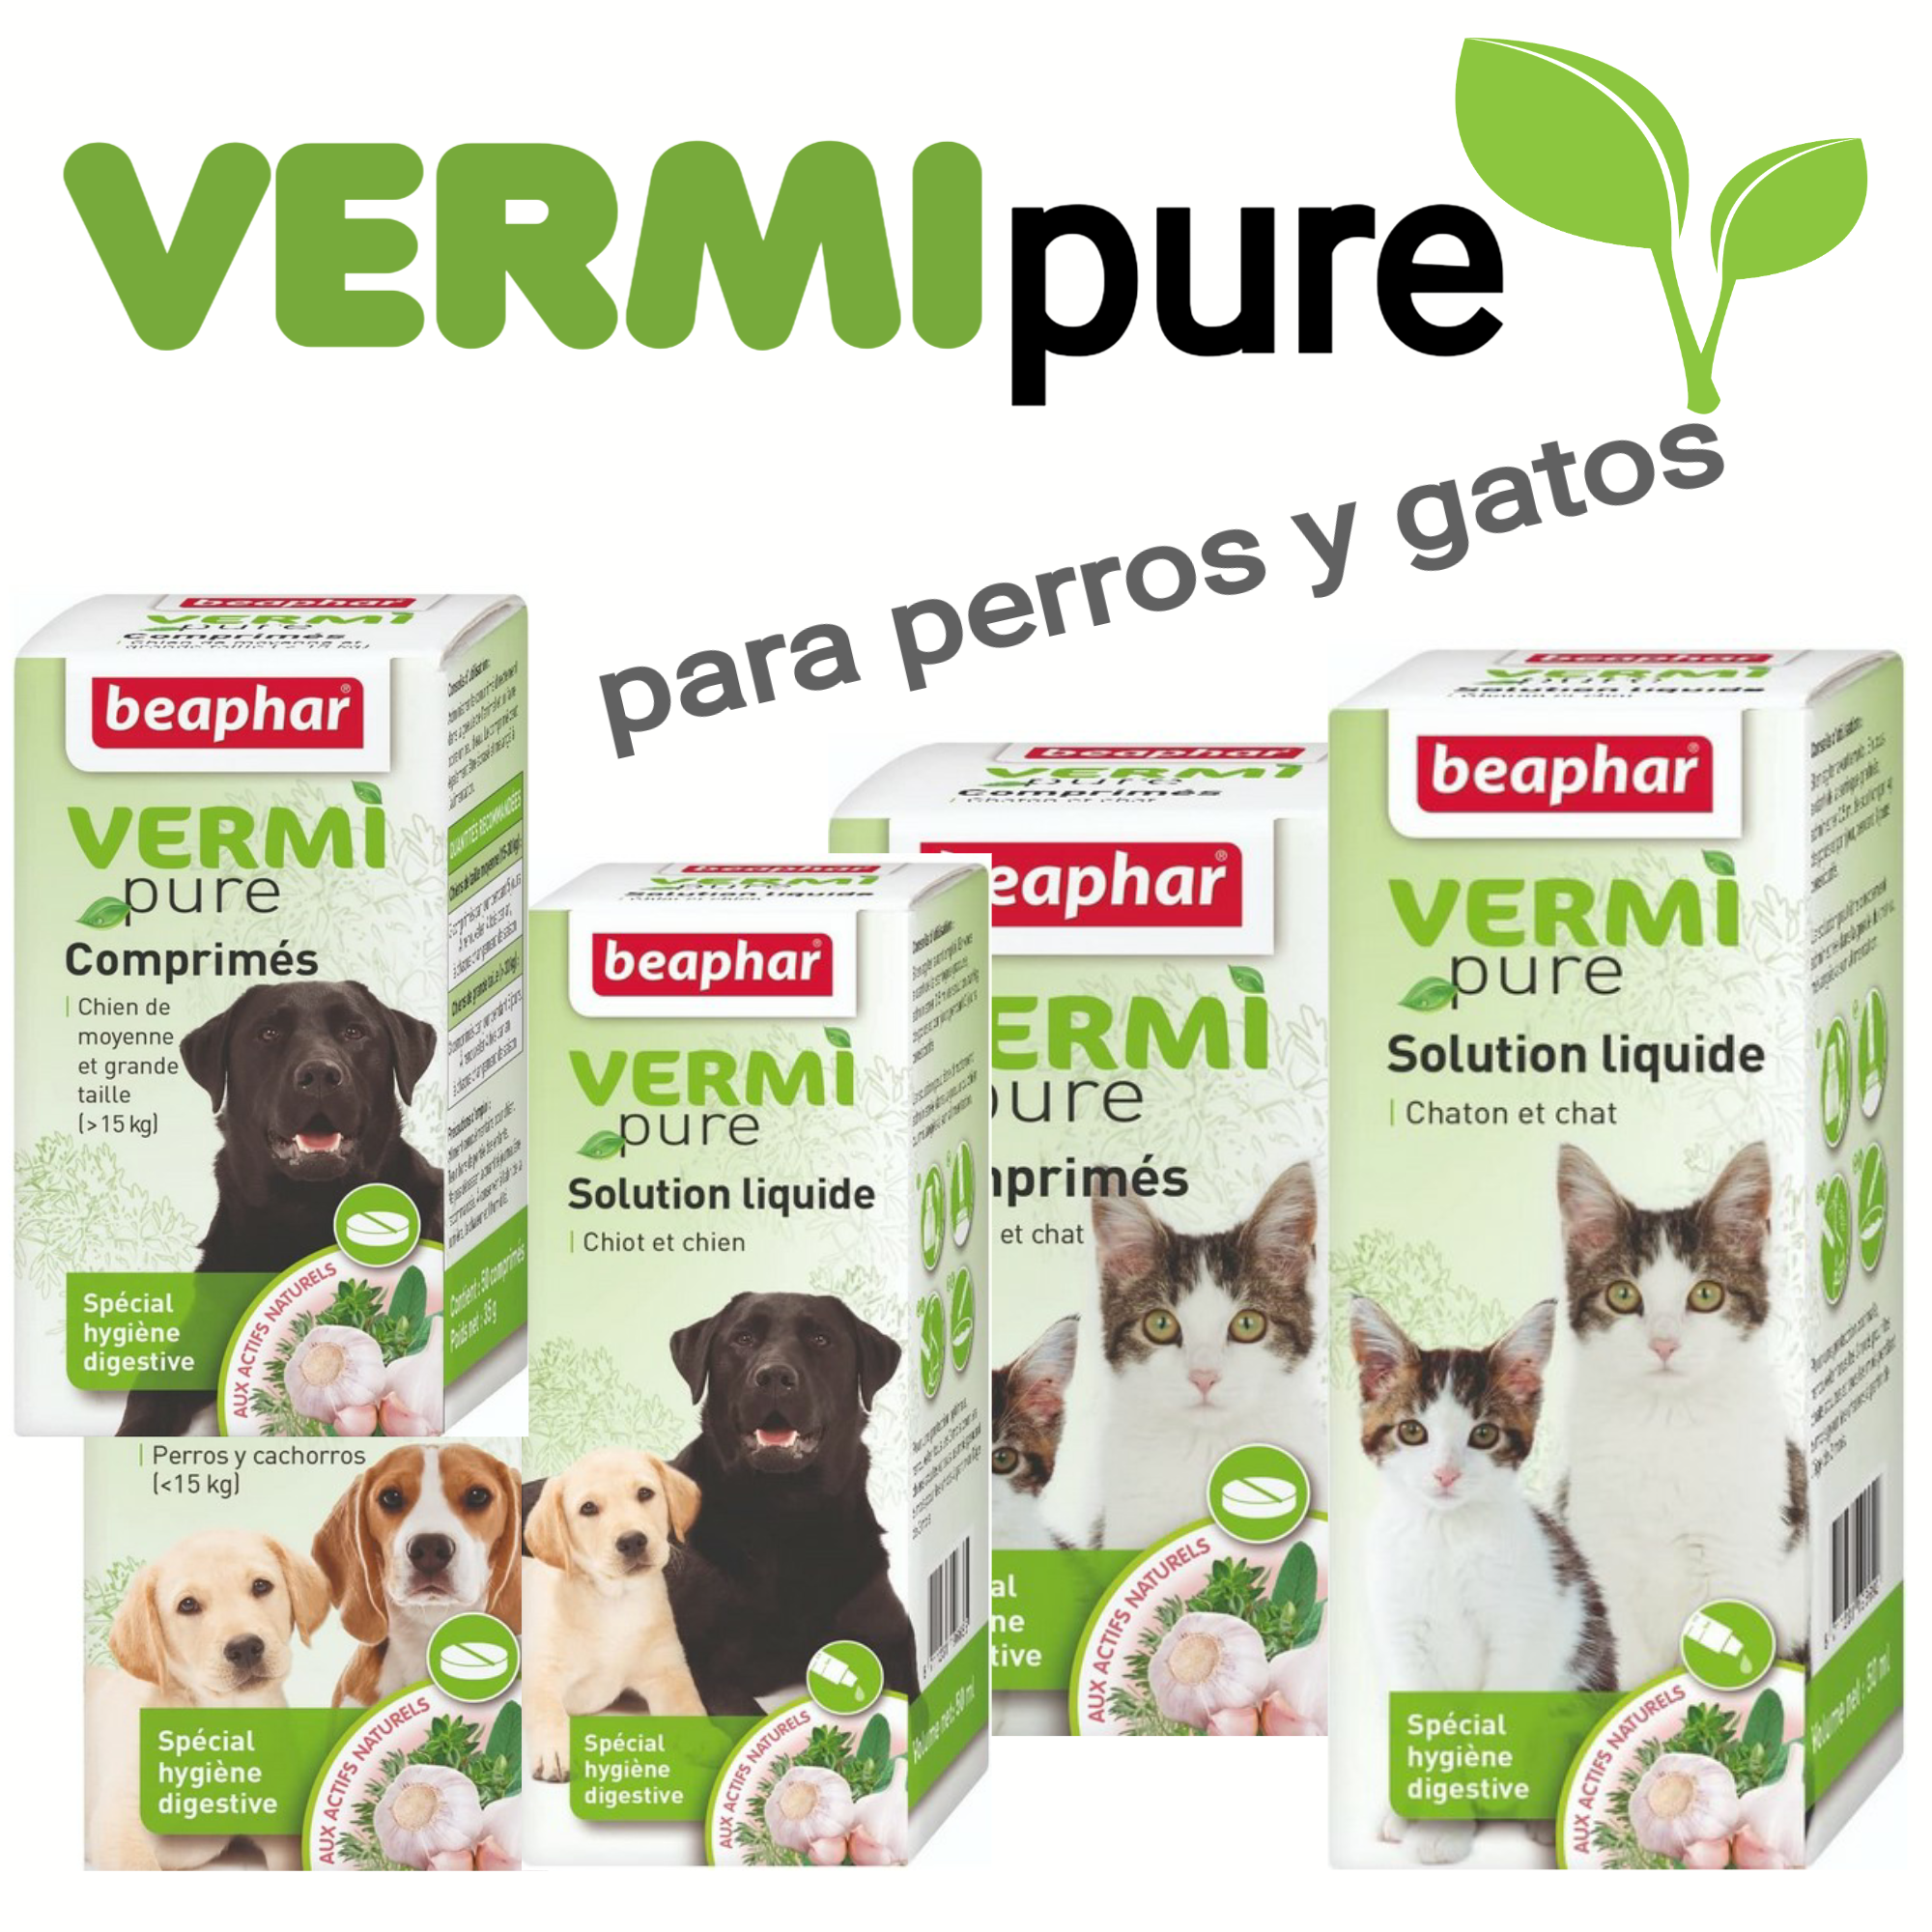 Antiparasitario interno intestinales para perros y gatos, en comprimidos y en solución liquida